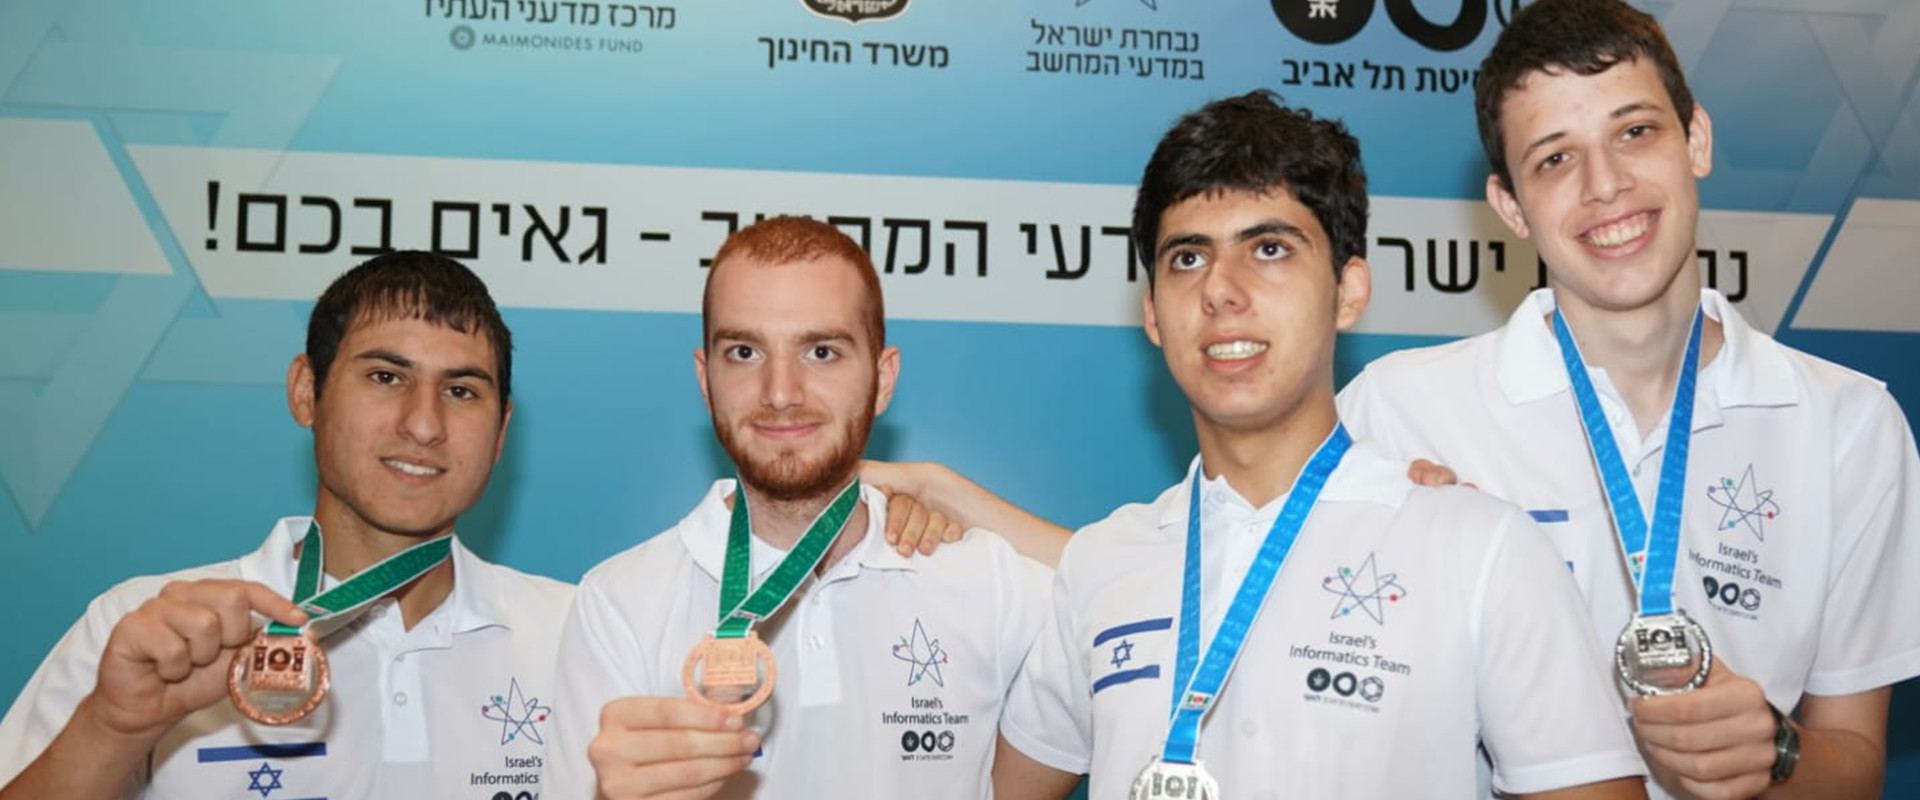 האלופים האולימפיים הישראלים 